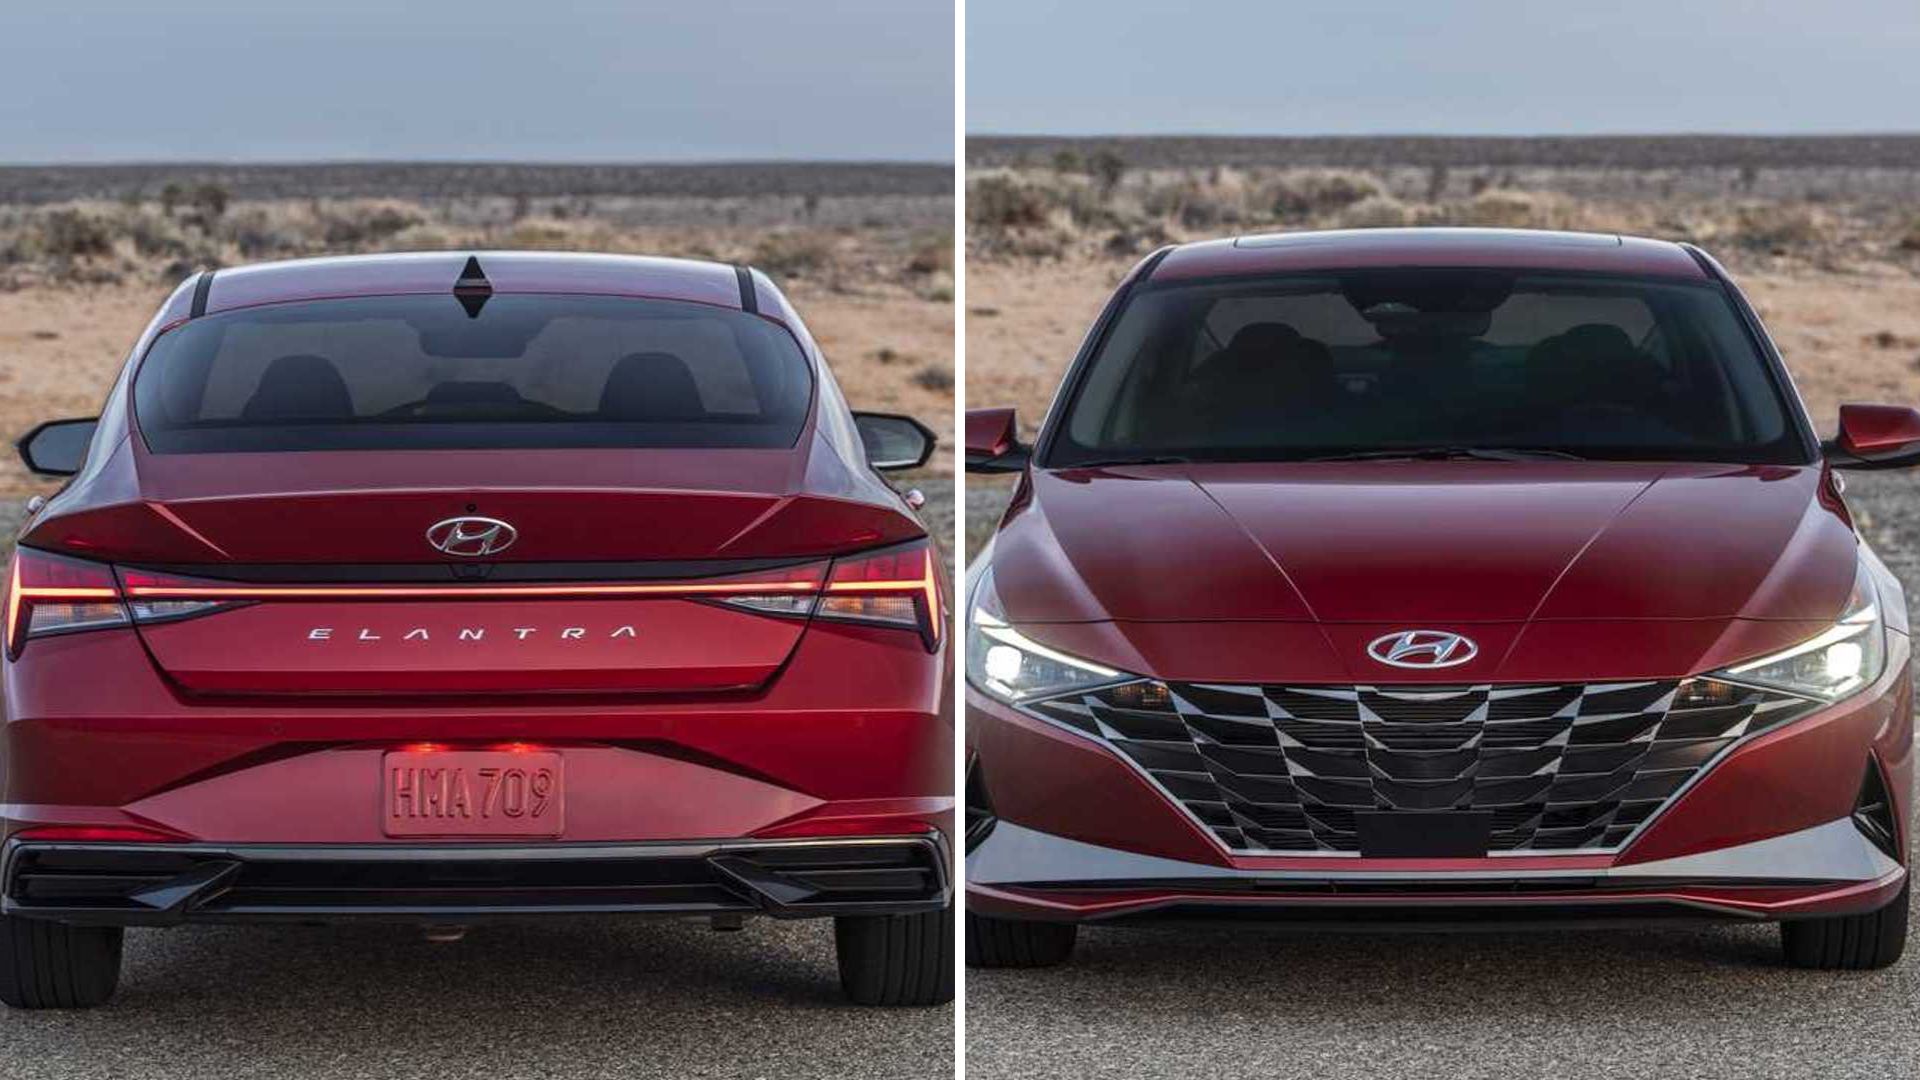 Com design ousado, novo Hyundai Elantra 2024 tem fotos reveladas